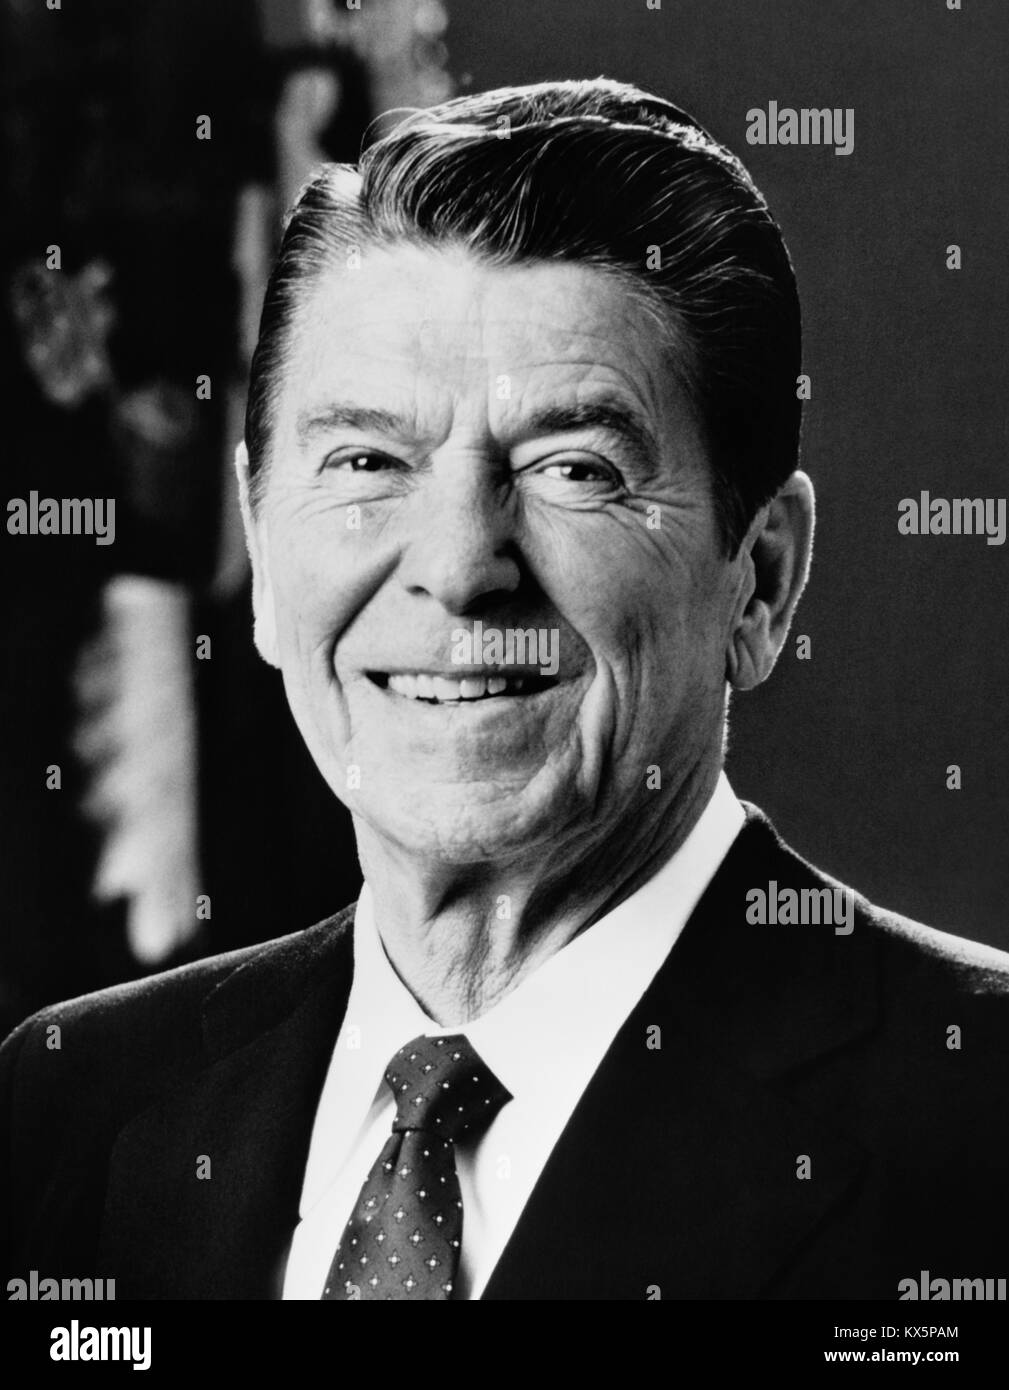 Präsident Ronald Reagan (1911-2004) war der 40. Präsident der Vereinigten Staaten (01/20/1981 - 01/20/1989). Stockfoto